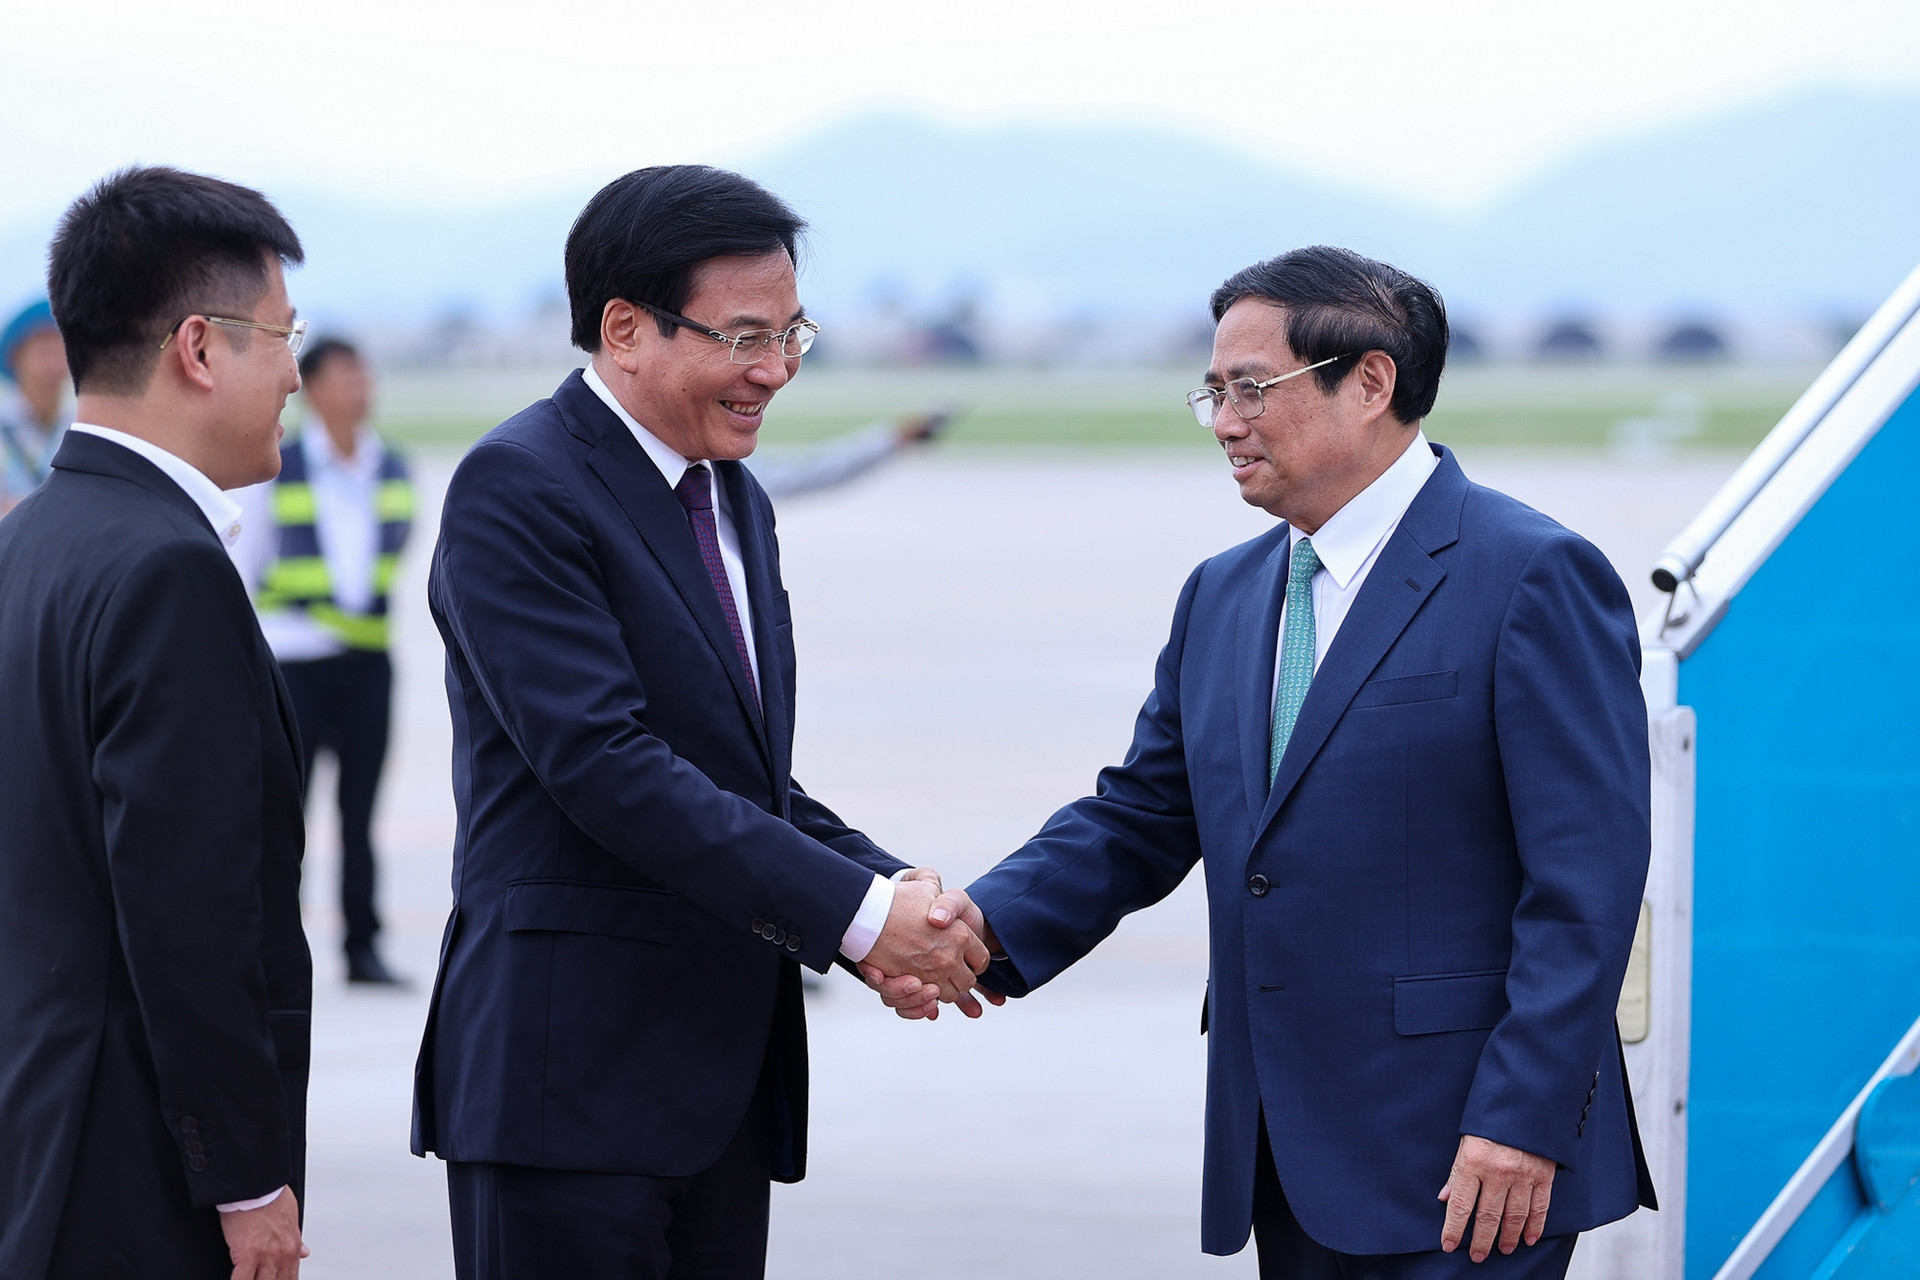 Thủ tướng Phạm Minh Chính về tới Hà Nội, kết thúc tốt đẹp chuyến công tác tại Hoa Kỳ và Brazil - Ảnh 1.